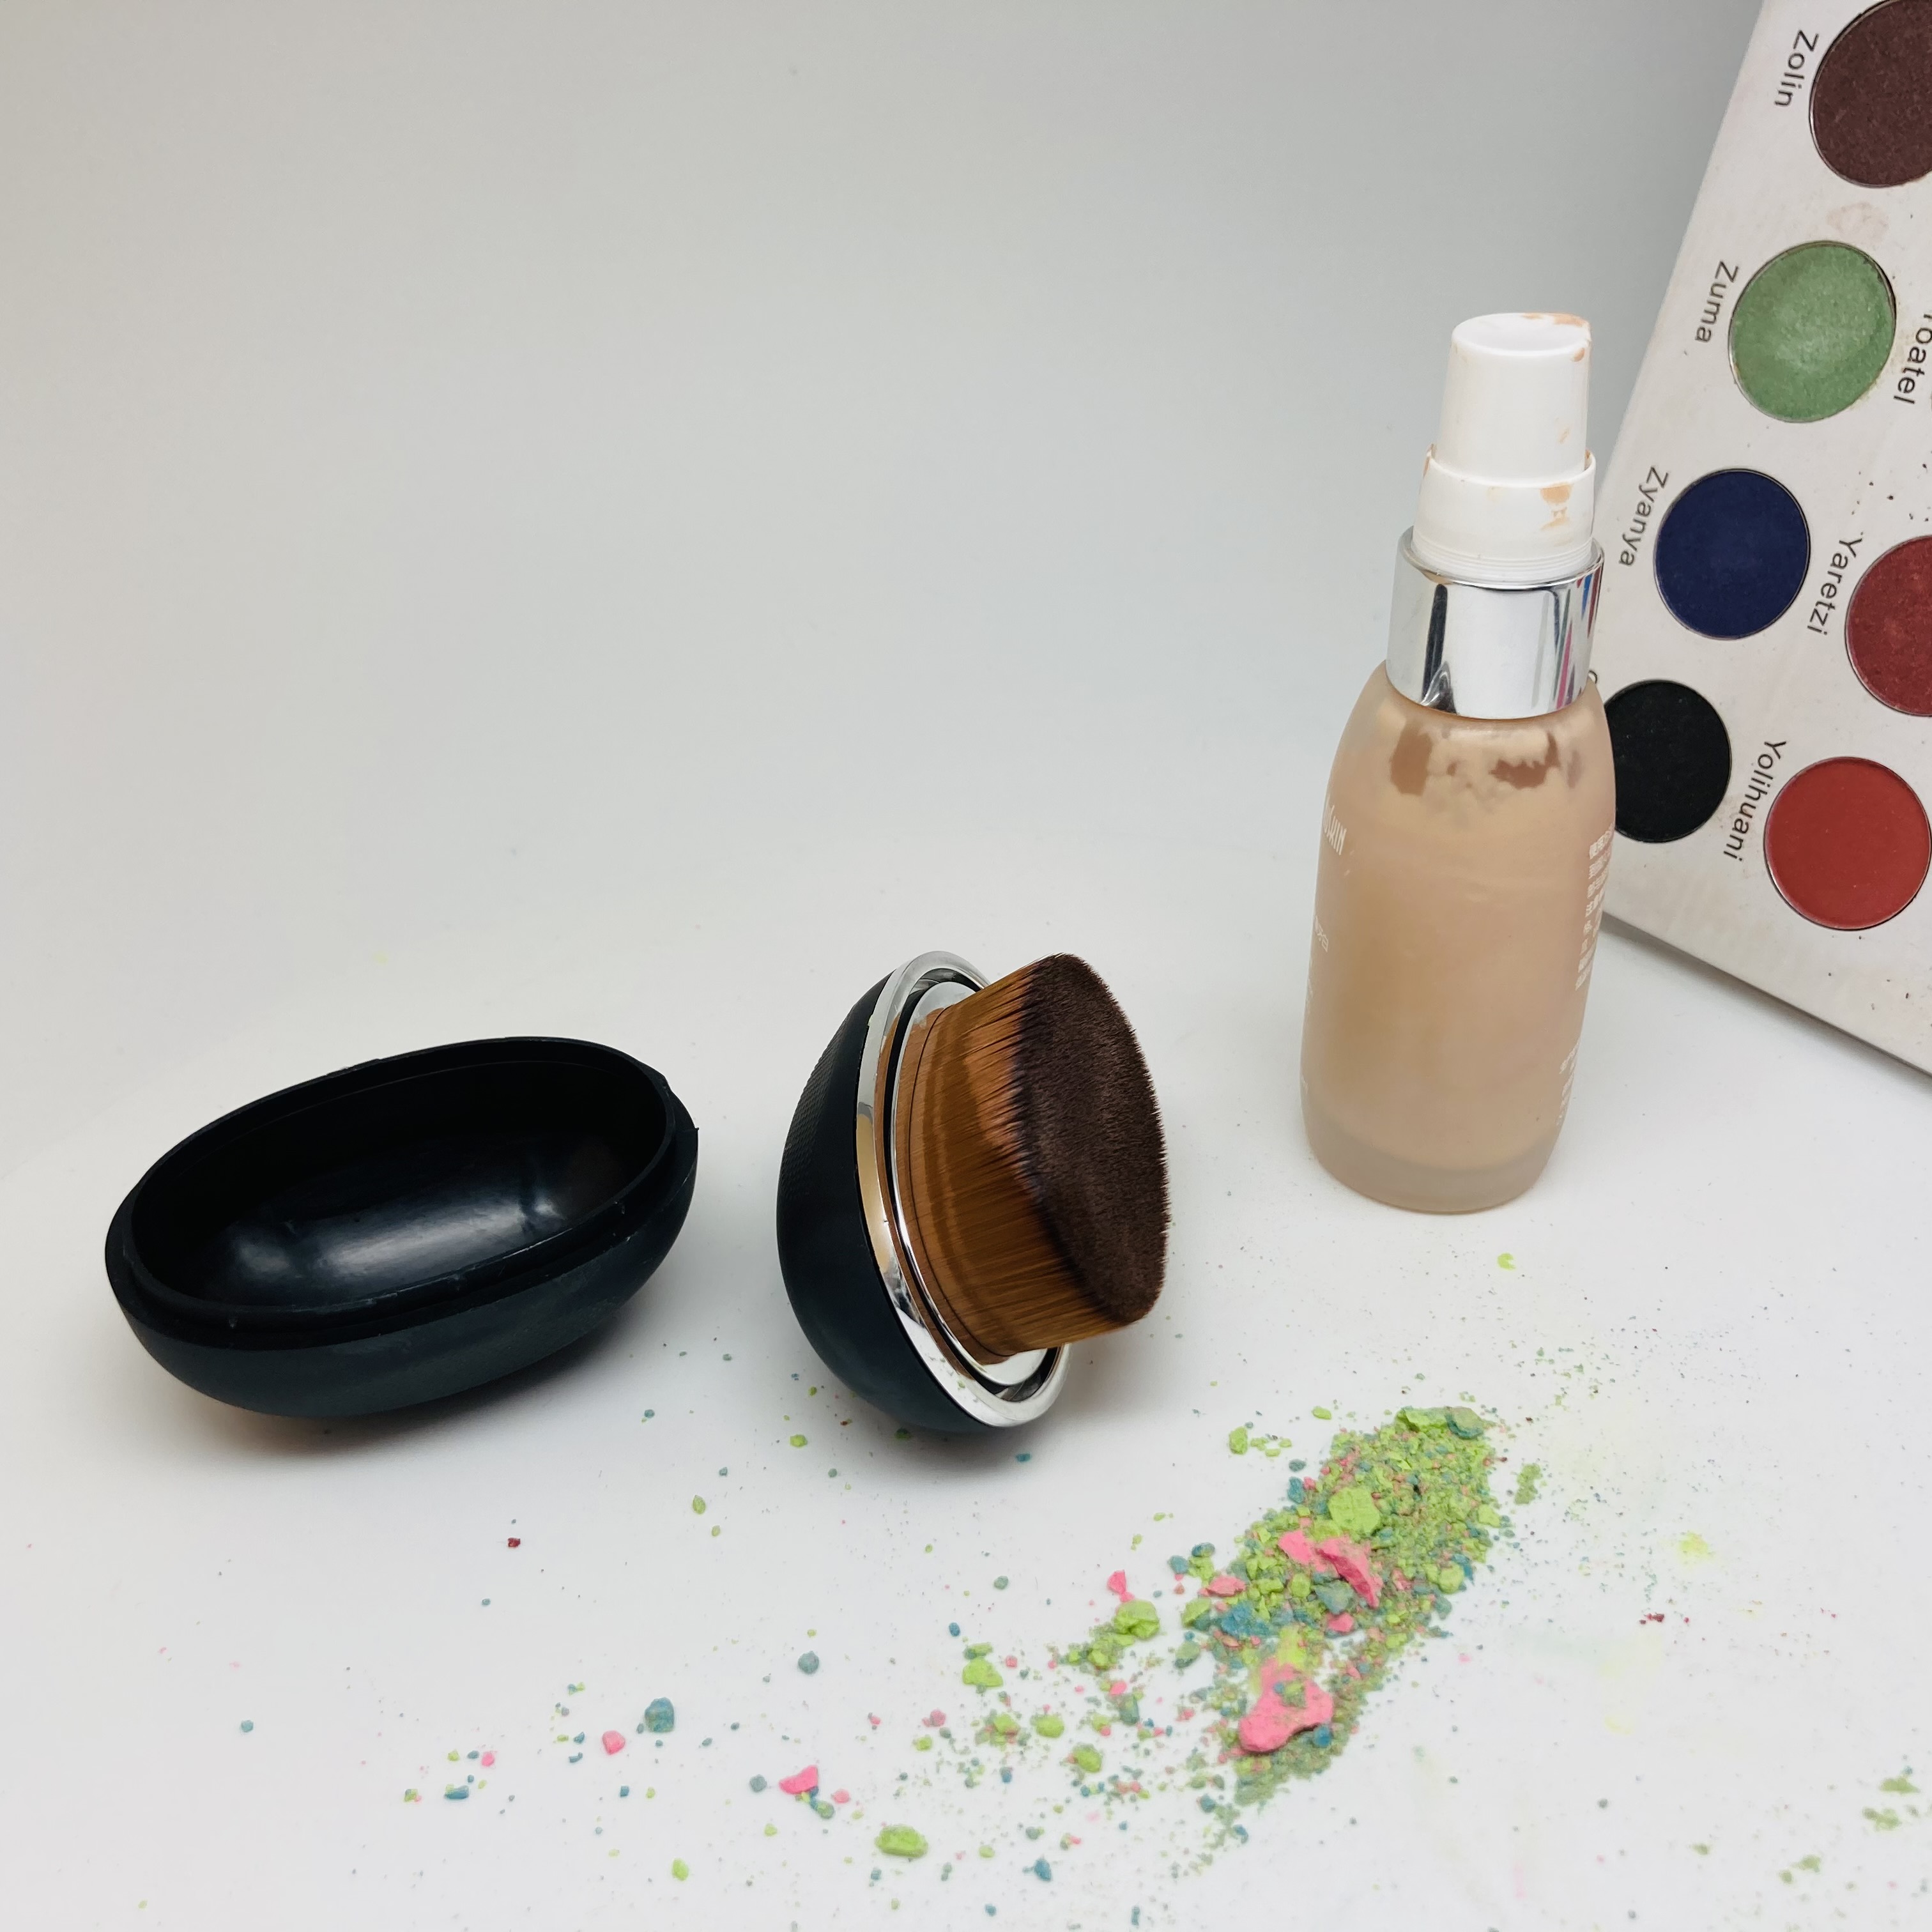 Nuova scatola magica di plastica ovale fabbricazione di pennelli per trucco per fondotinta in polvere cosmetica